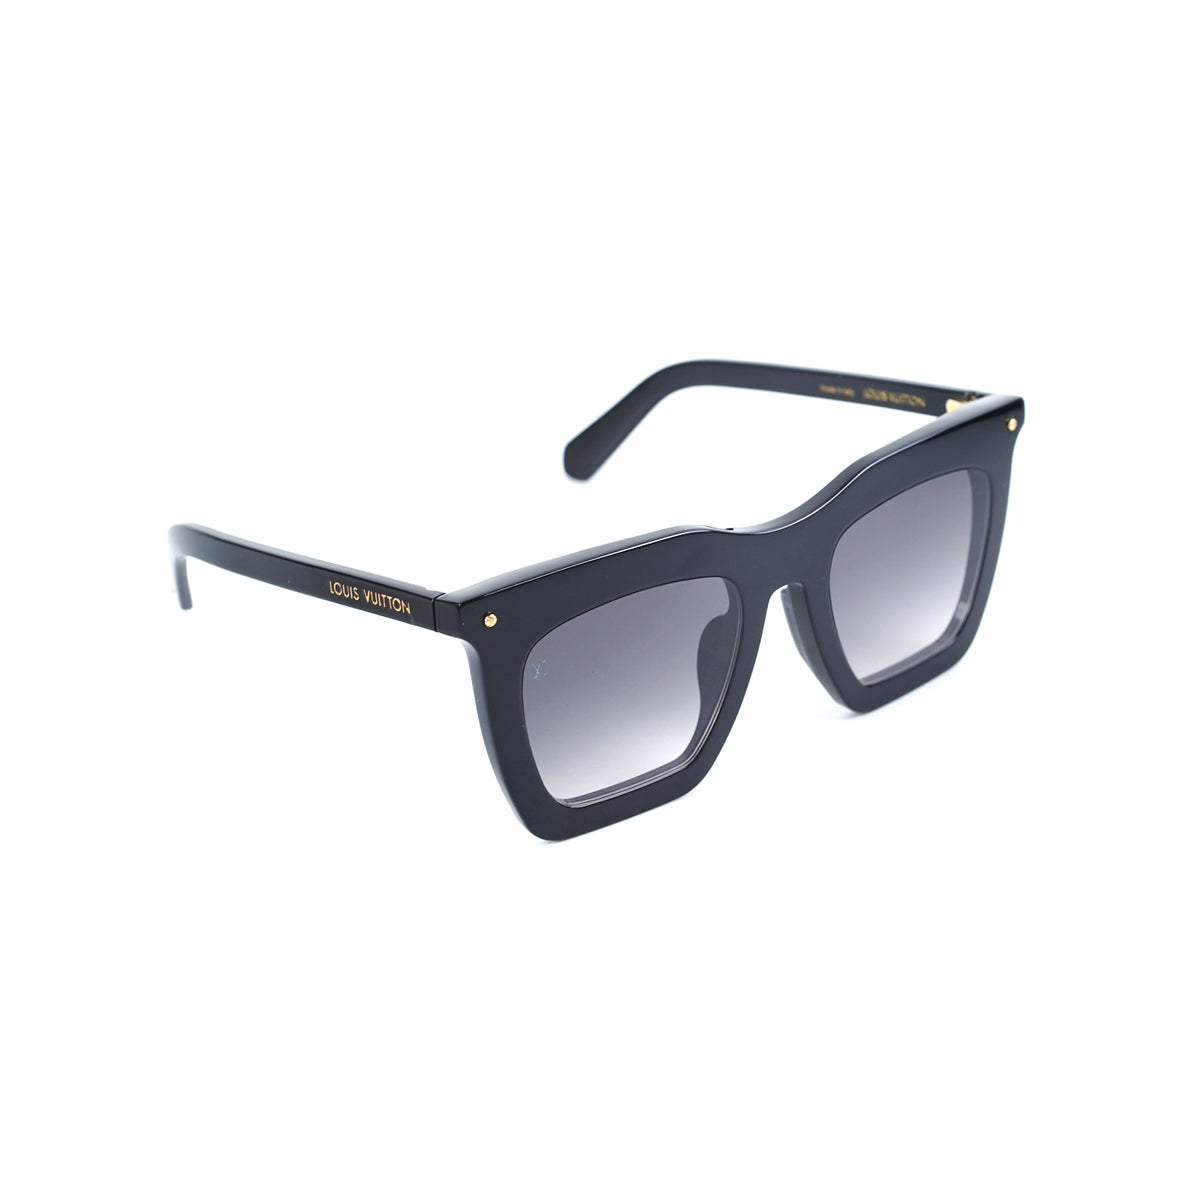 Products By Louis Vuitton: La Grande Bellezza Mix Sunglasses